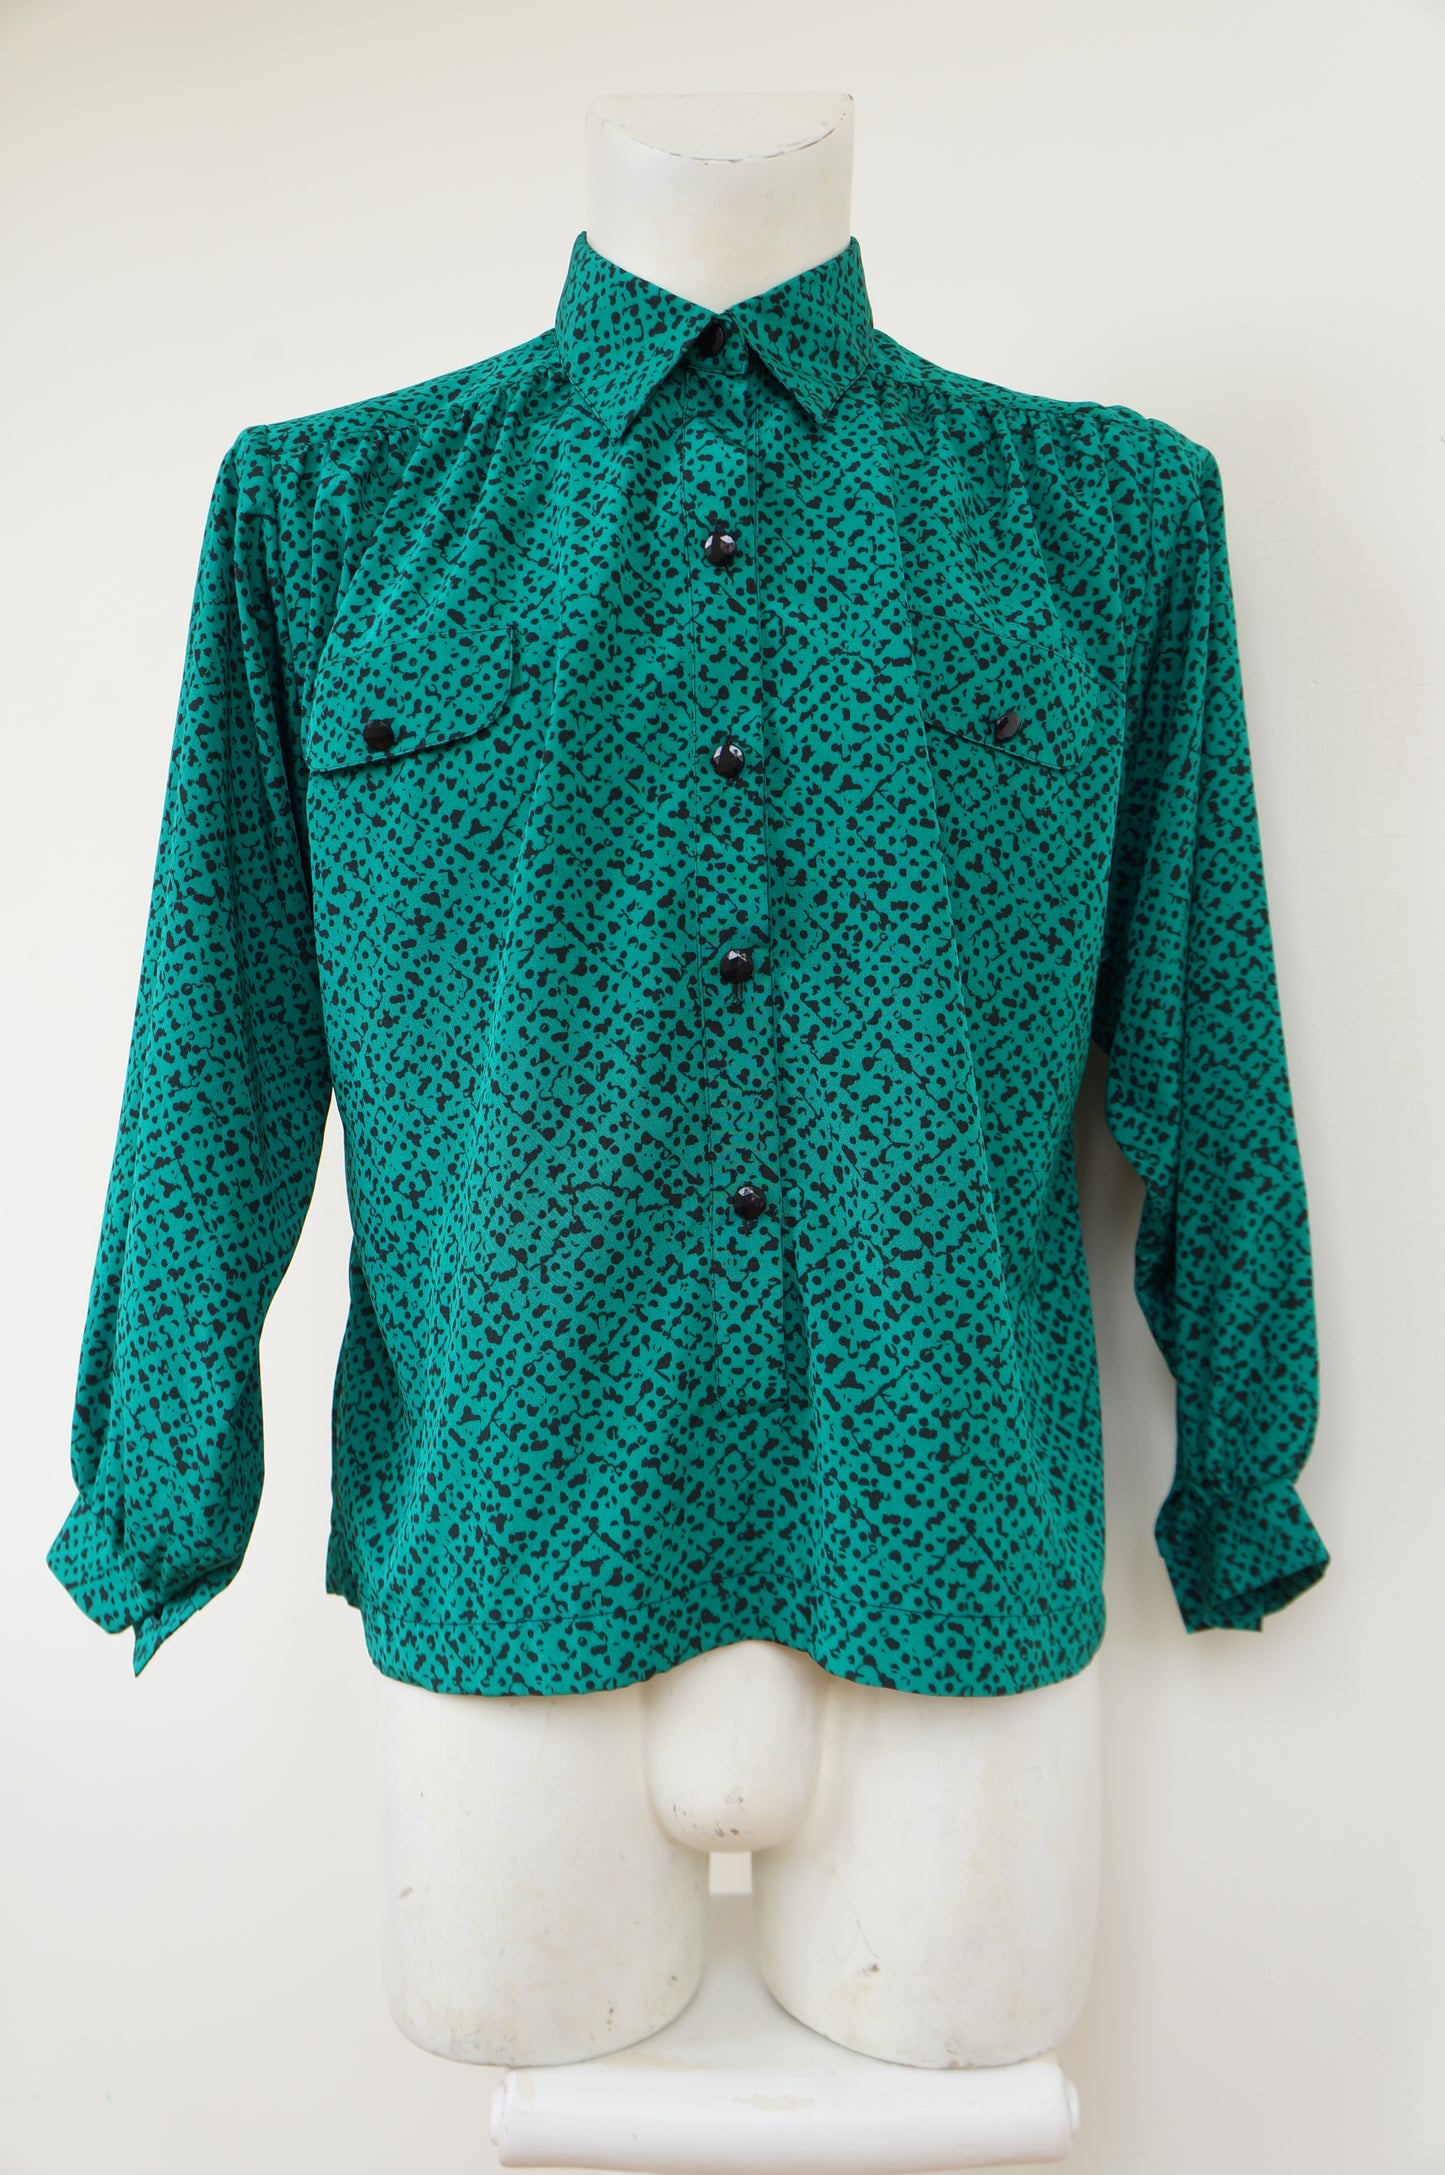 Weave green shirt